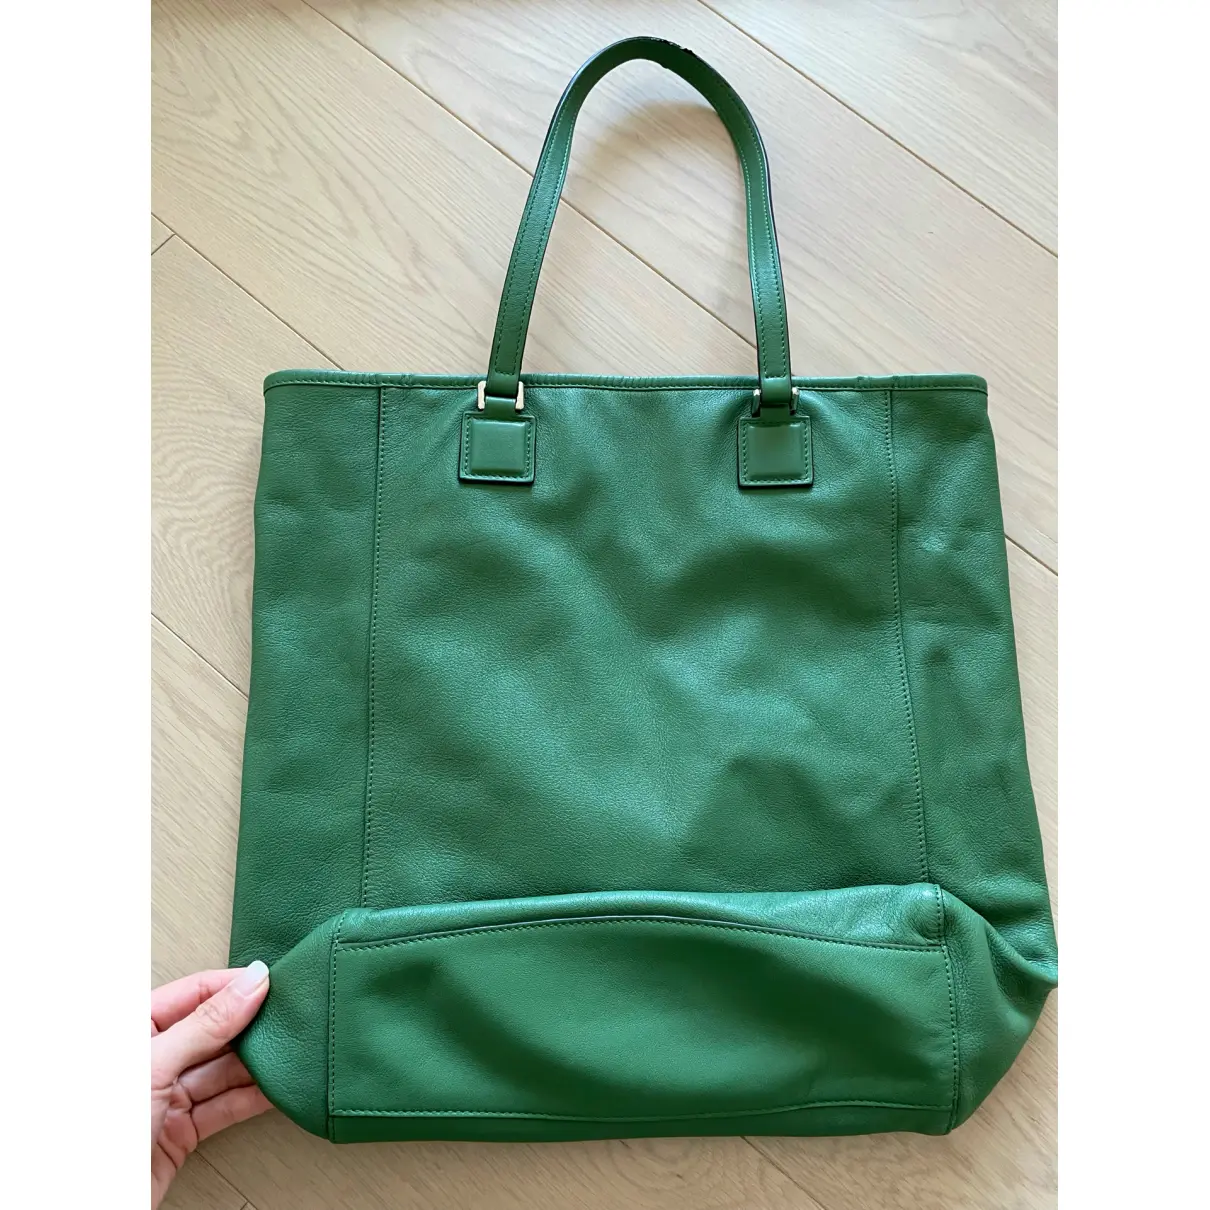 Buy Loewe Barcelona leather handbag online